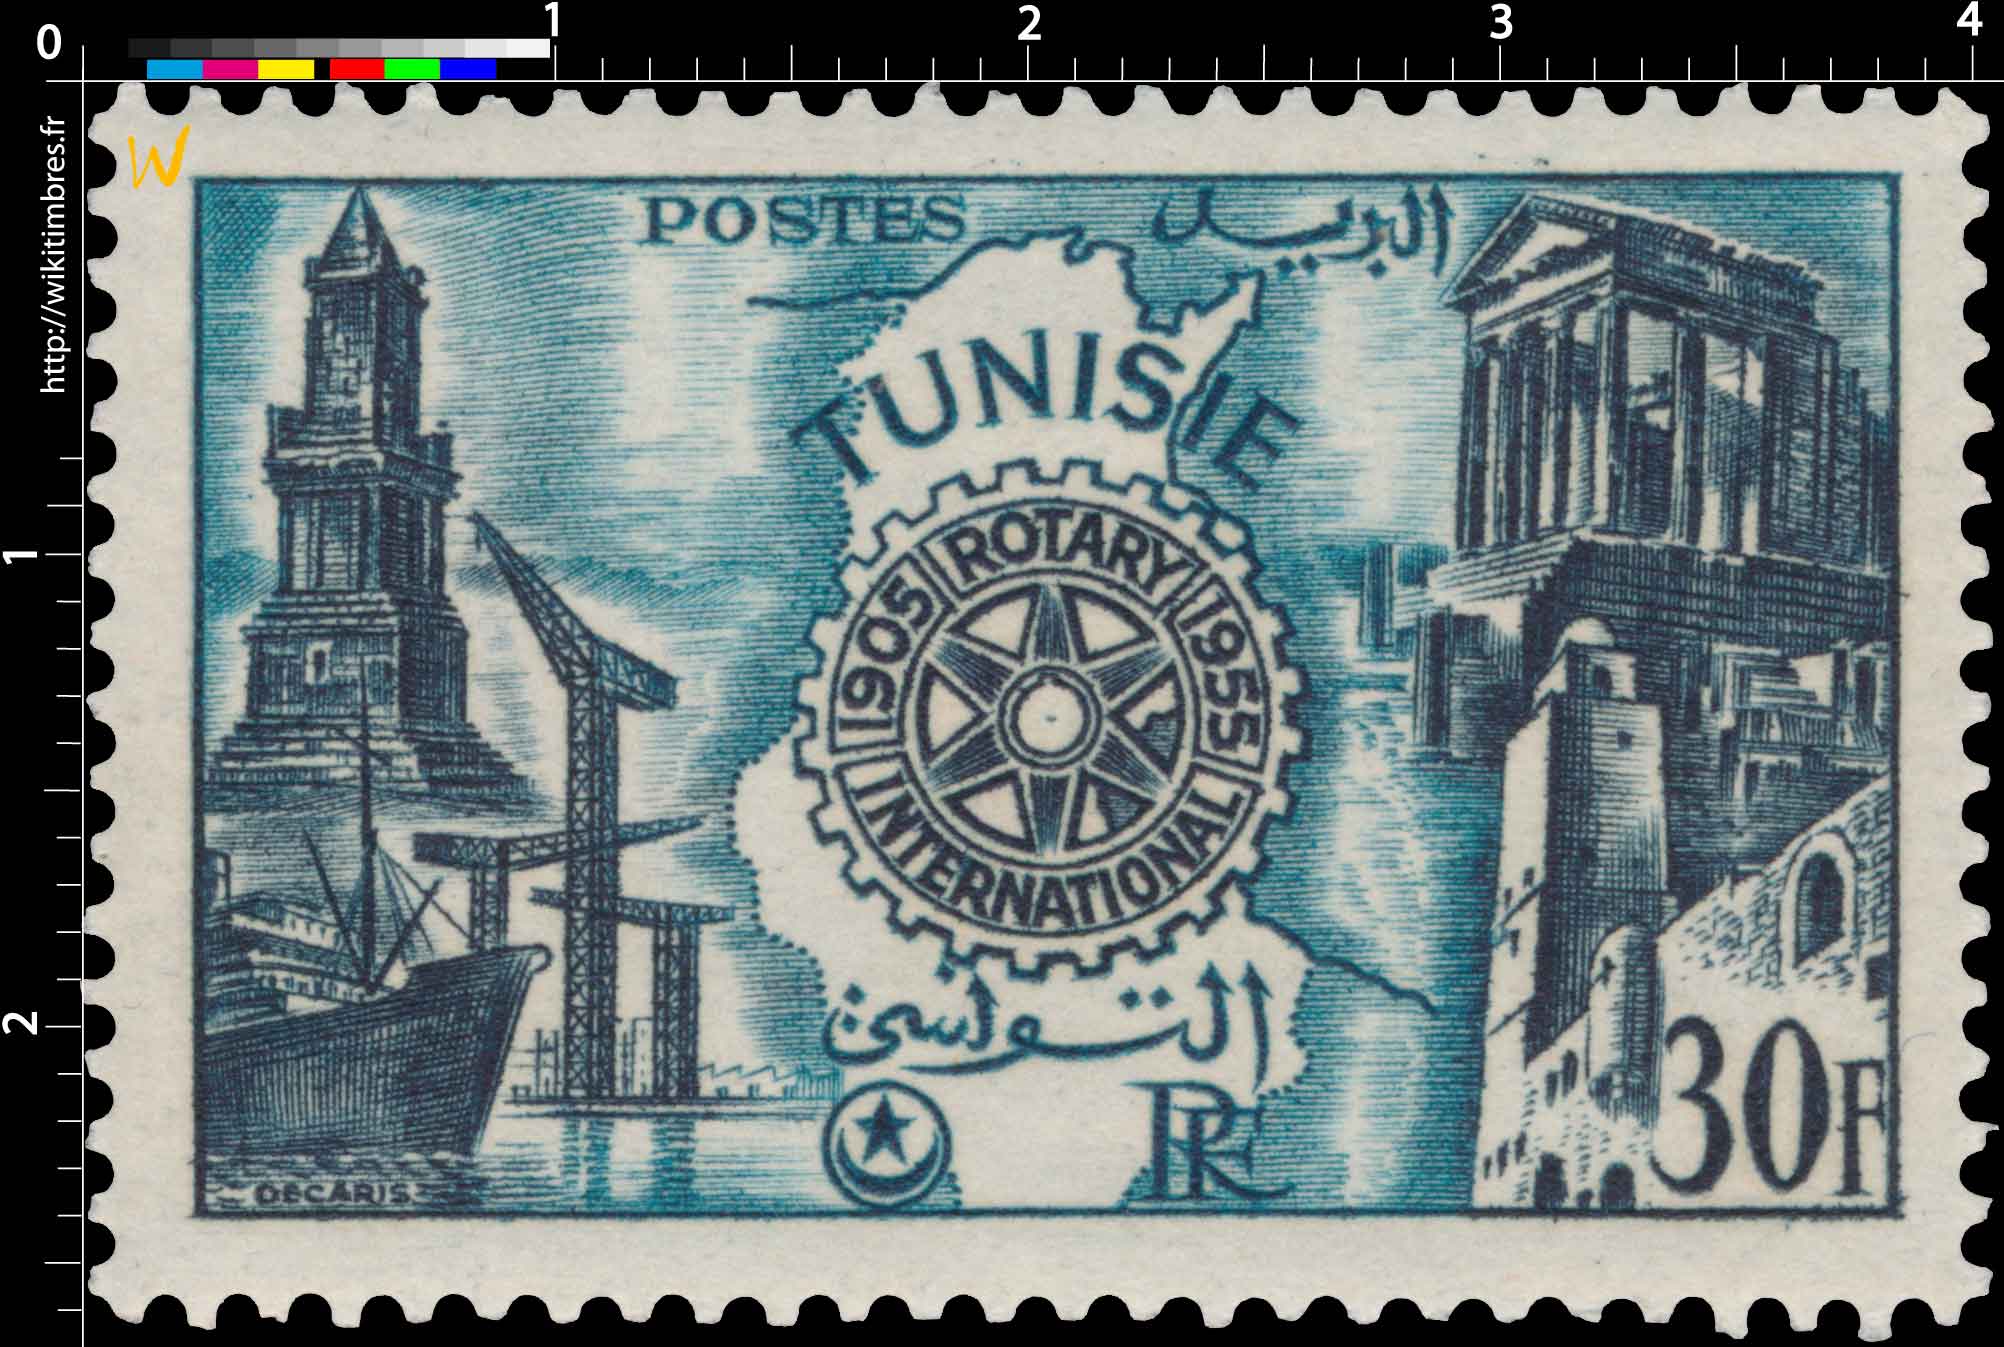 Tunisie - Cinquantenaire du Rotary International